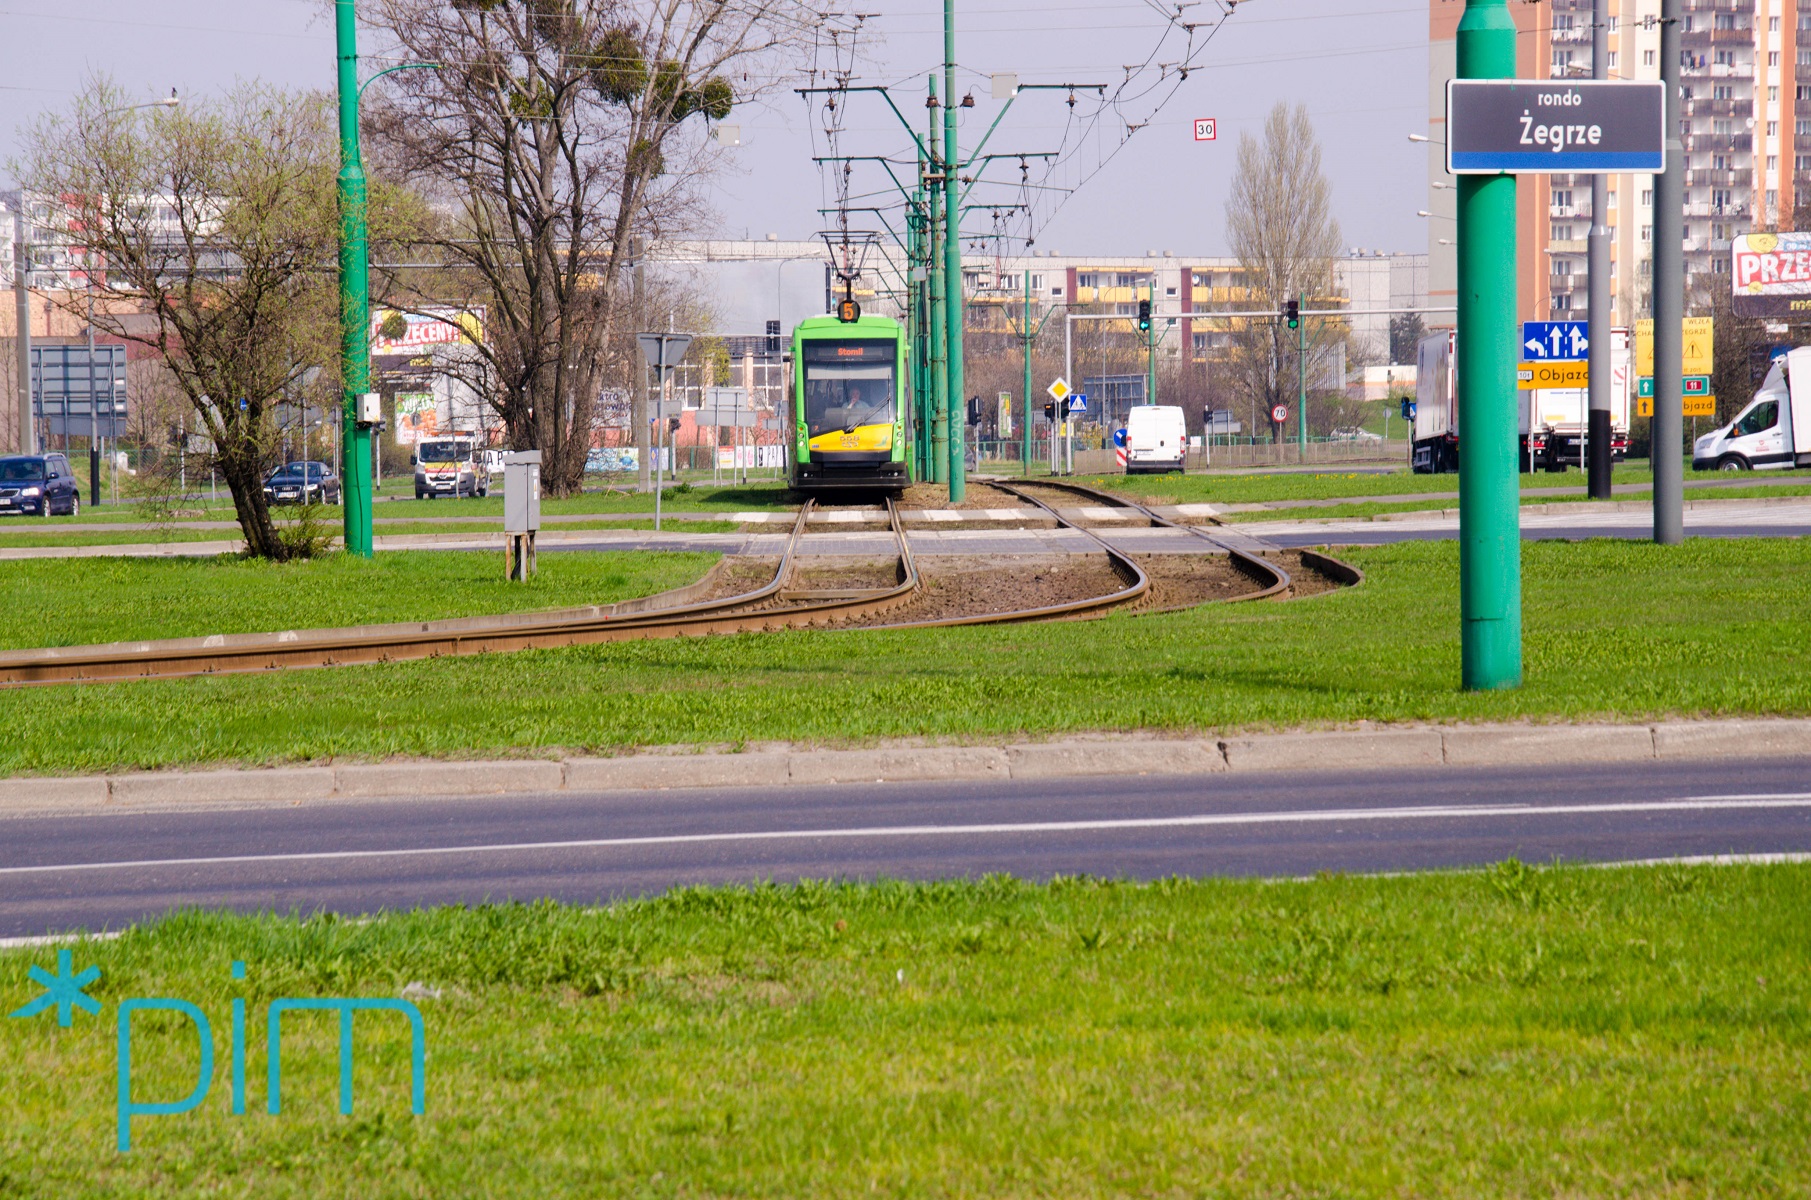 Z ronda Żegrze tramwaje pojadą ul. Unii Lubelskiej fot PIM - grafika artykułu